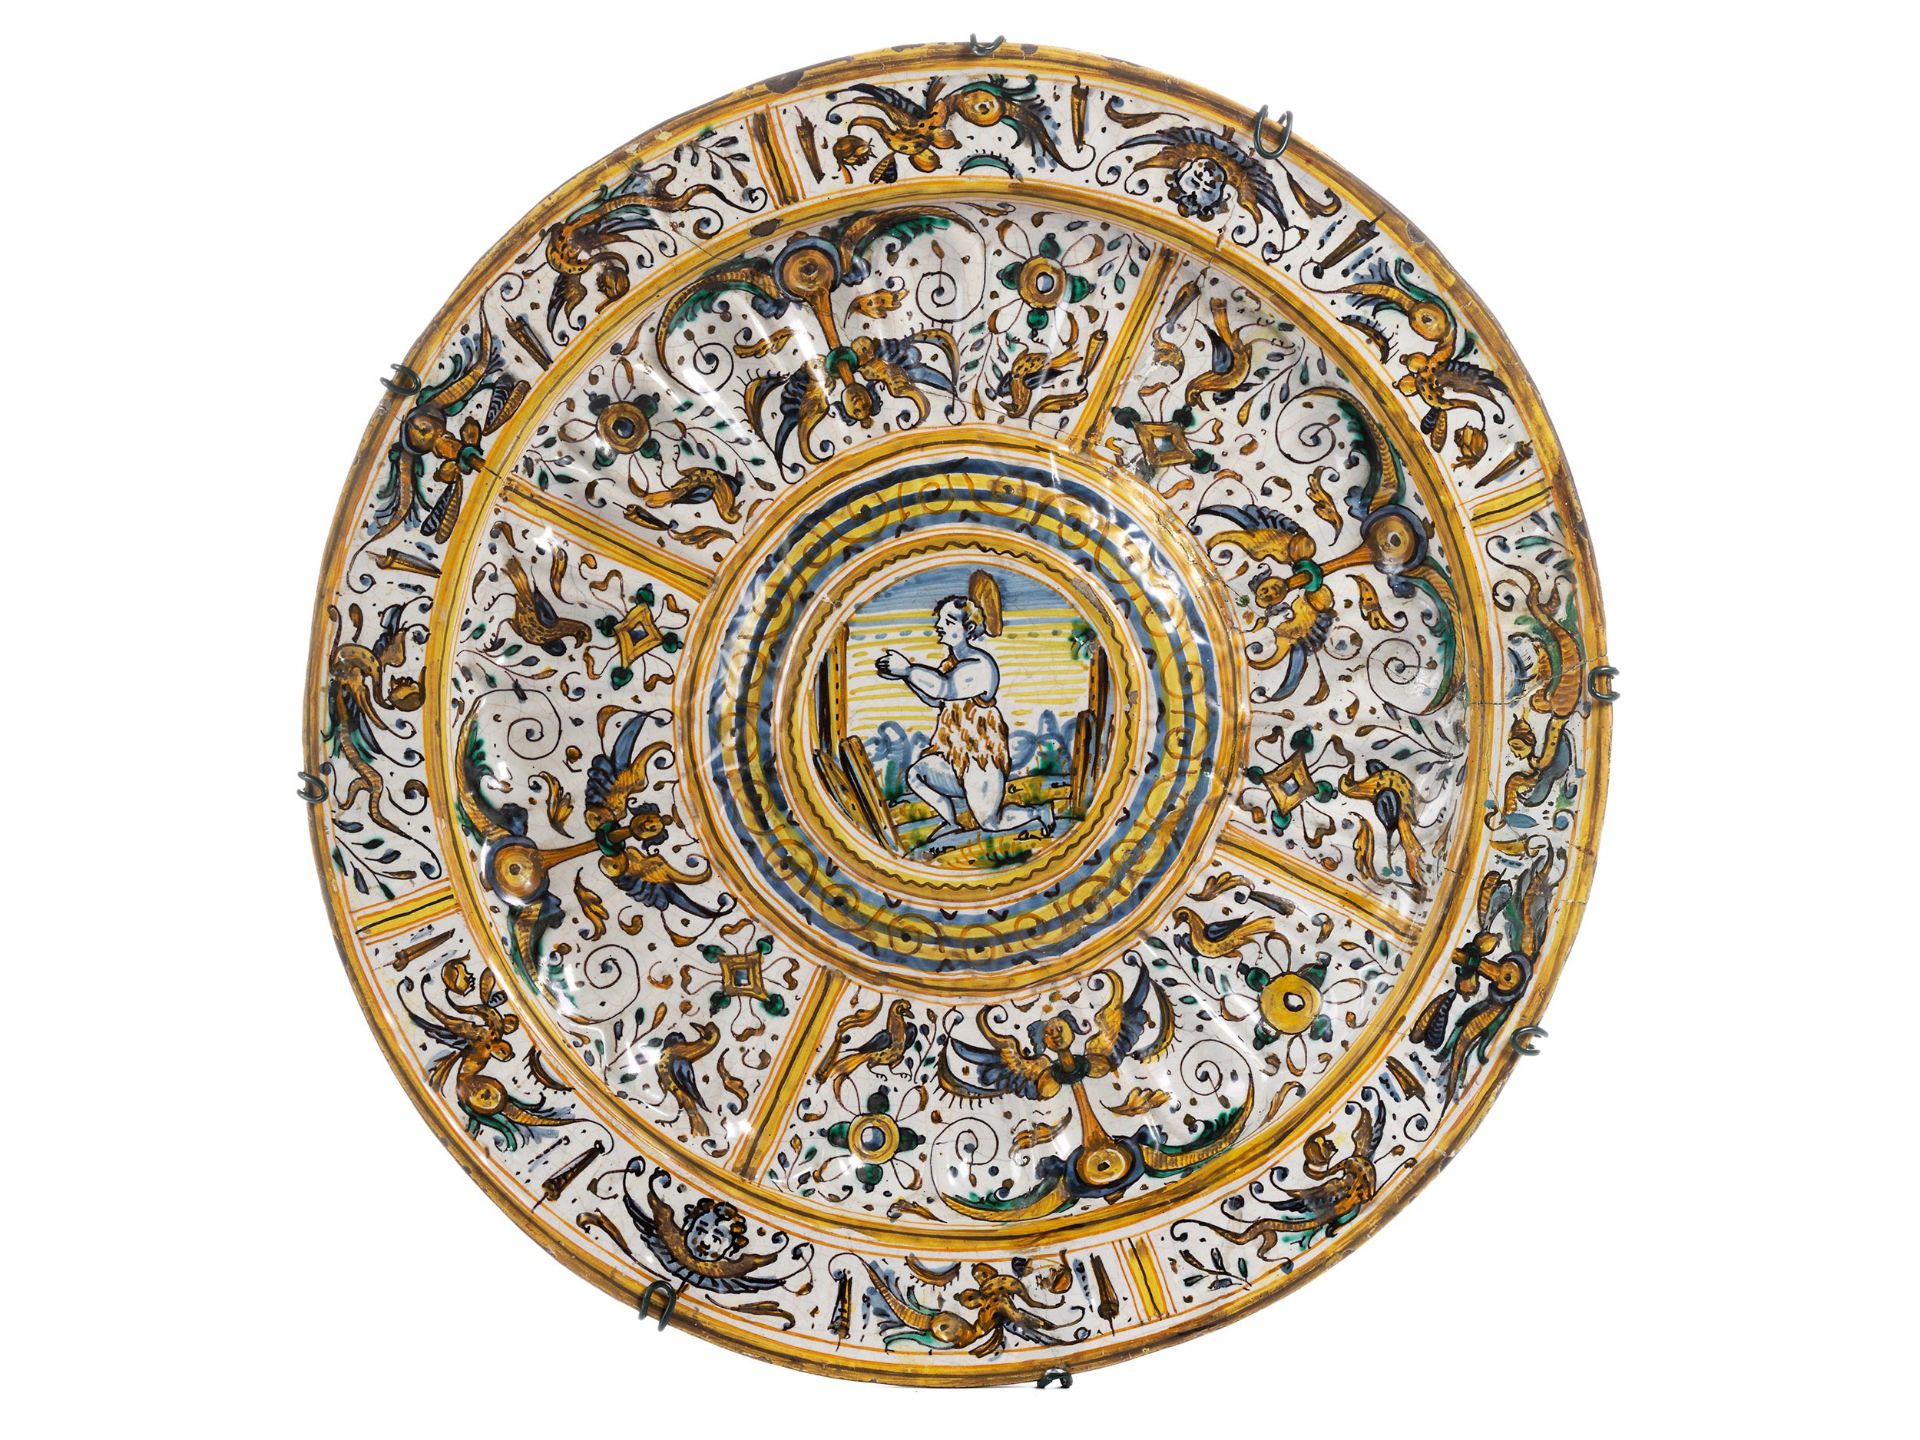 Grosse Deruta-Keramik Buckelplatte